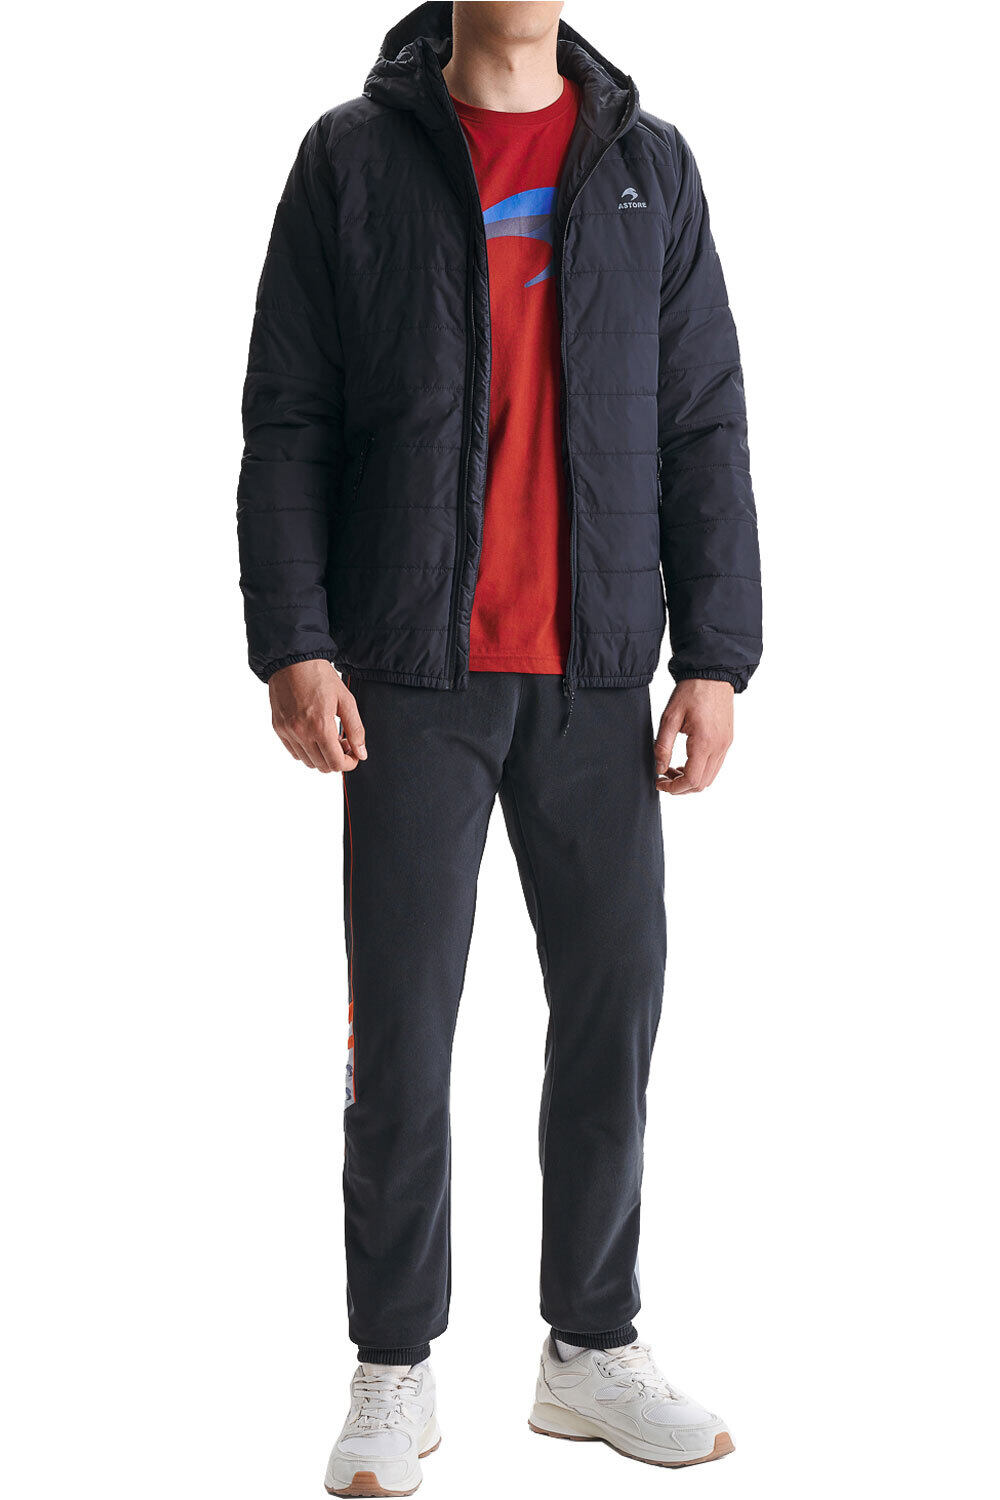 Astore presenta su nueva línea de chaquetas acolchadas - TradeSport